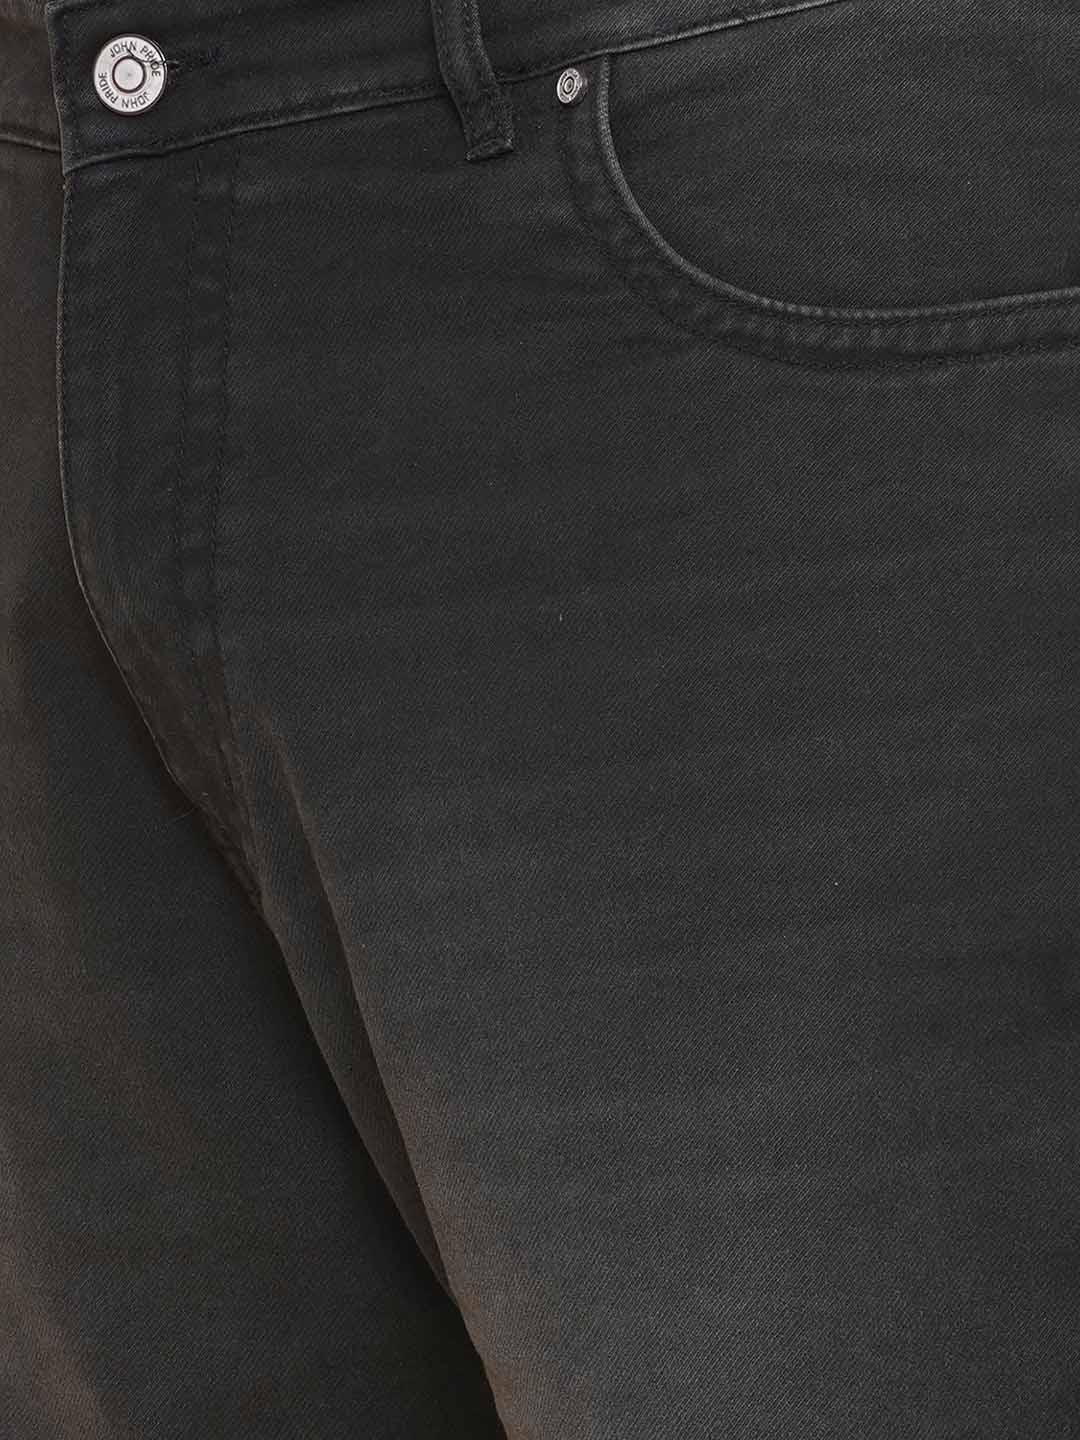 bottomwear/jeans/JPJ12429/jpj12429-2.jpg